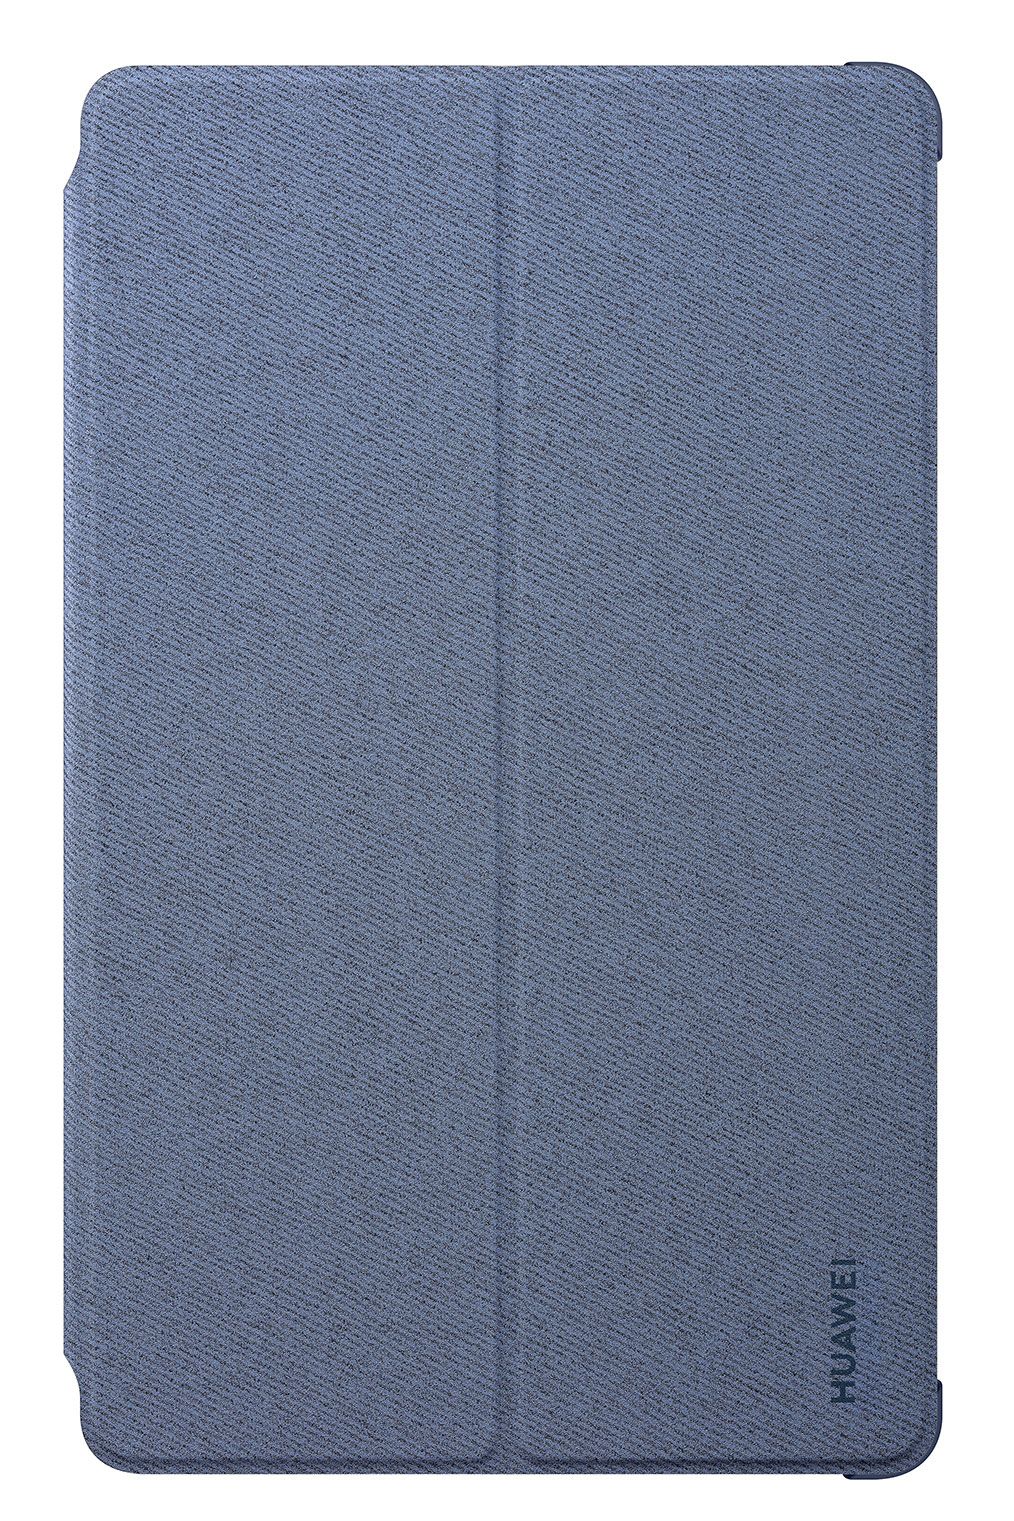 УЦЕНКА! Чехол на планшет HUAWEI MediaPad T8 Flip Cover Grey/Blue (2009864678422) в Киеве